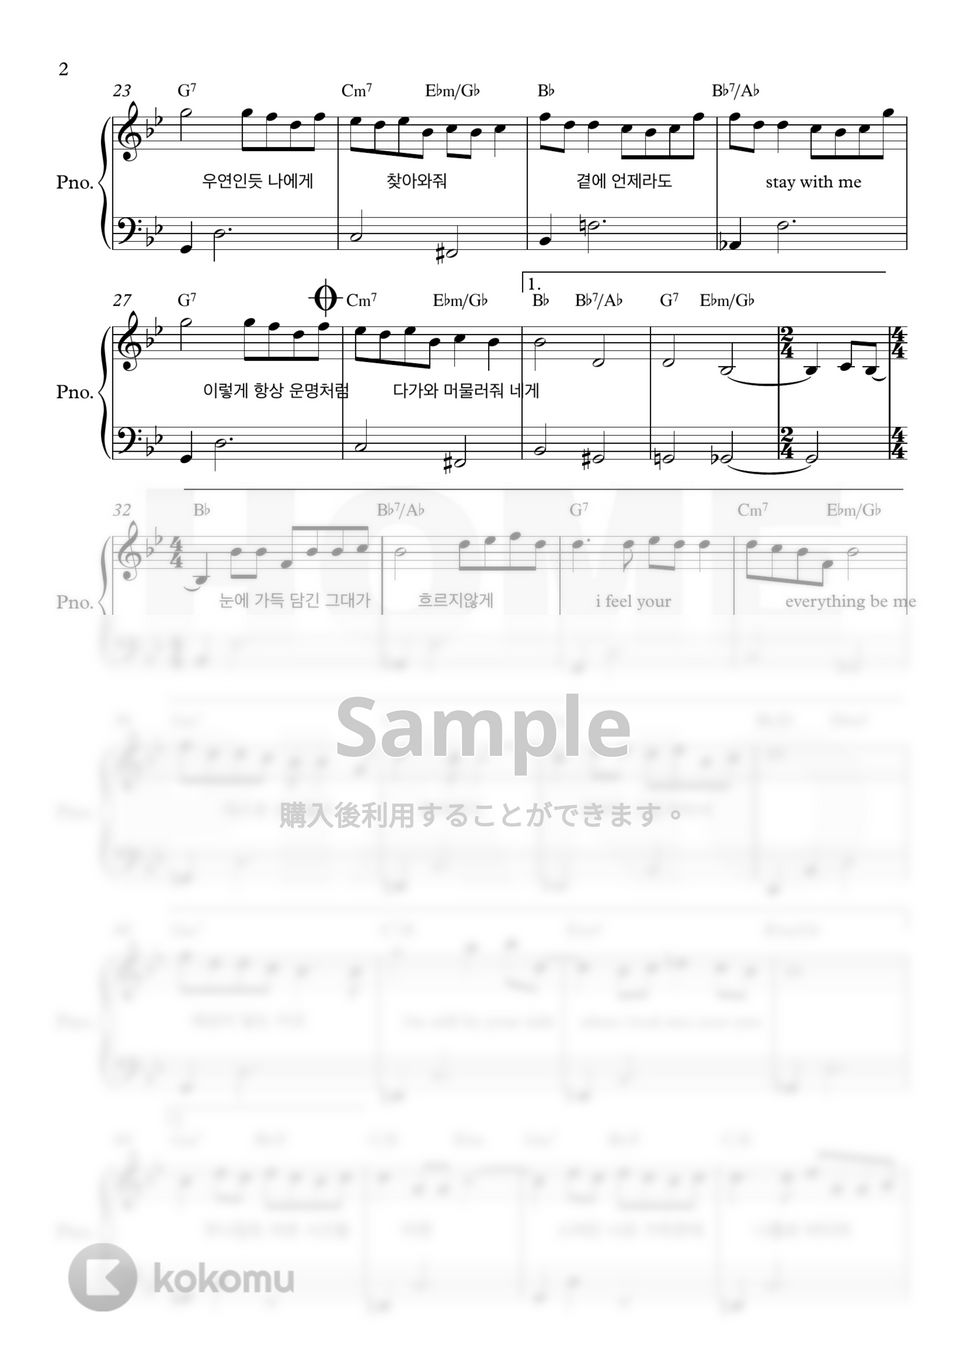 10cm - 偶然のような運命(愛の不時着 OST) (初級) by HOME PIANO